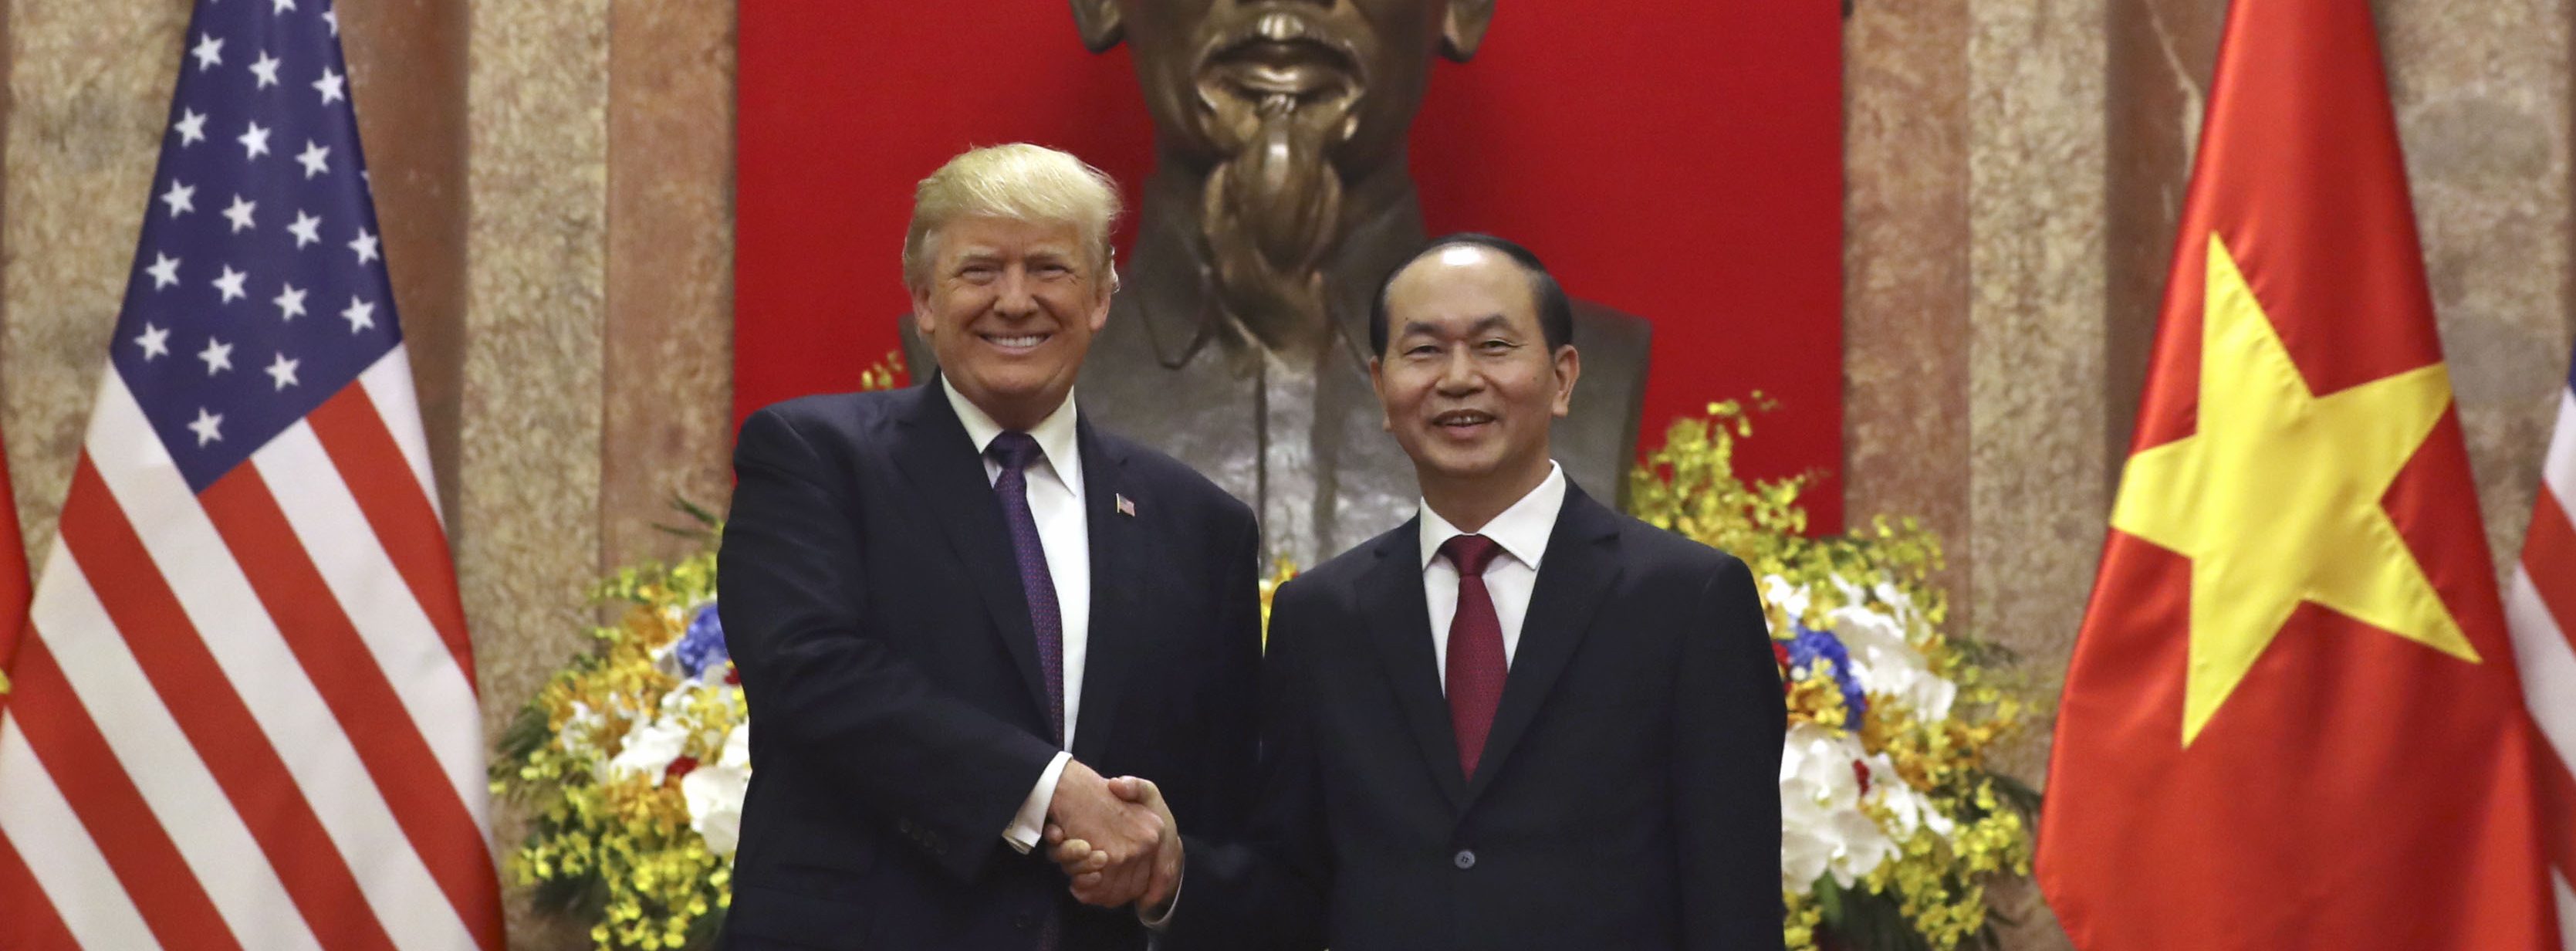 Le président américain Donald Trump et don homologue vietnamien Tran Dai Quang au palais présidentiel le 12 novembre 2017à Hanoï. (Source : CNN)